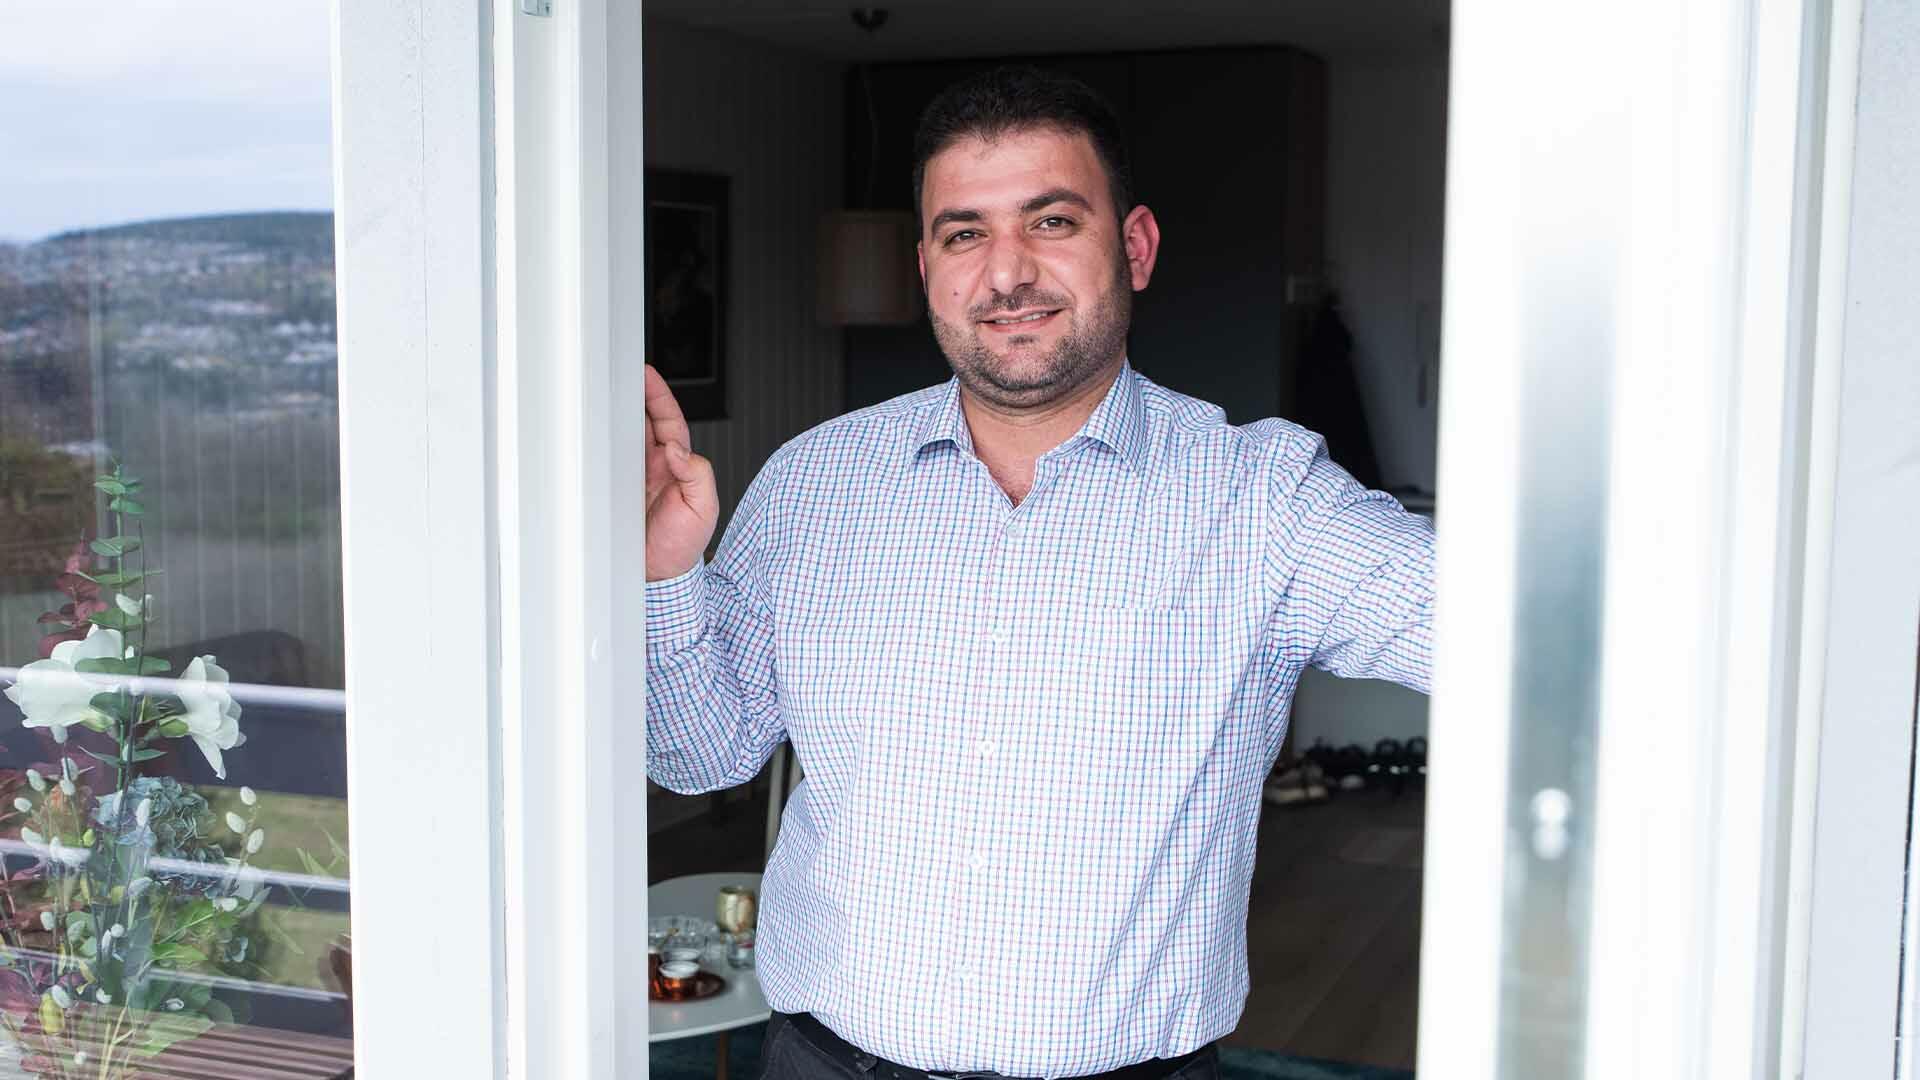 LO FAVØR BOLIGLÅN: Mohammed har sikret seg en av Norges beste renter på boliglån.